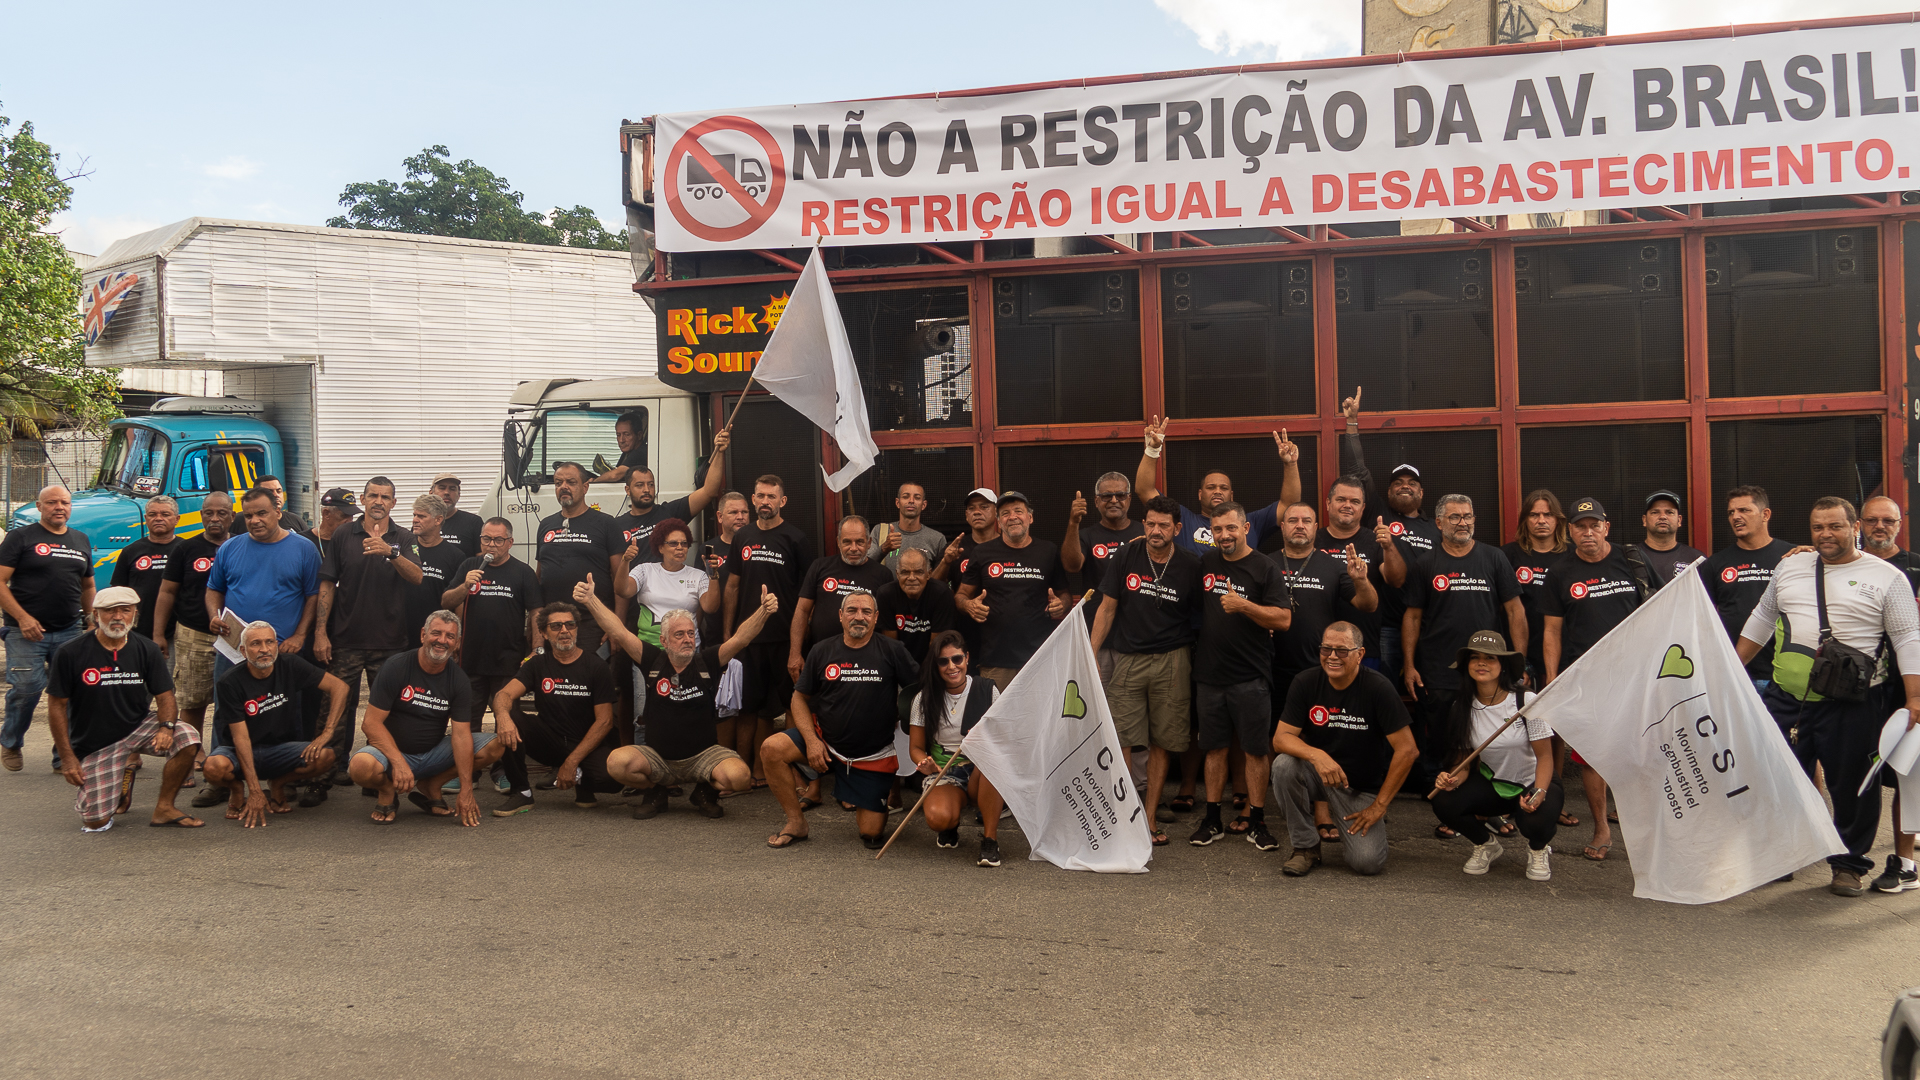 Protesto Av Brasil Restrição de Caminhoes Manifestantes